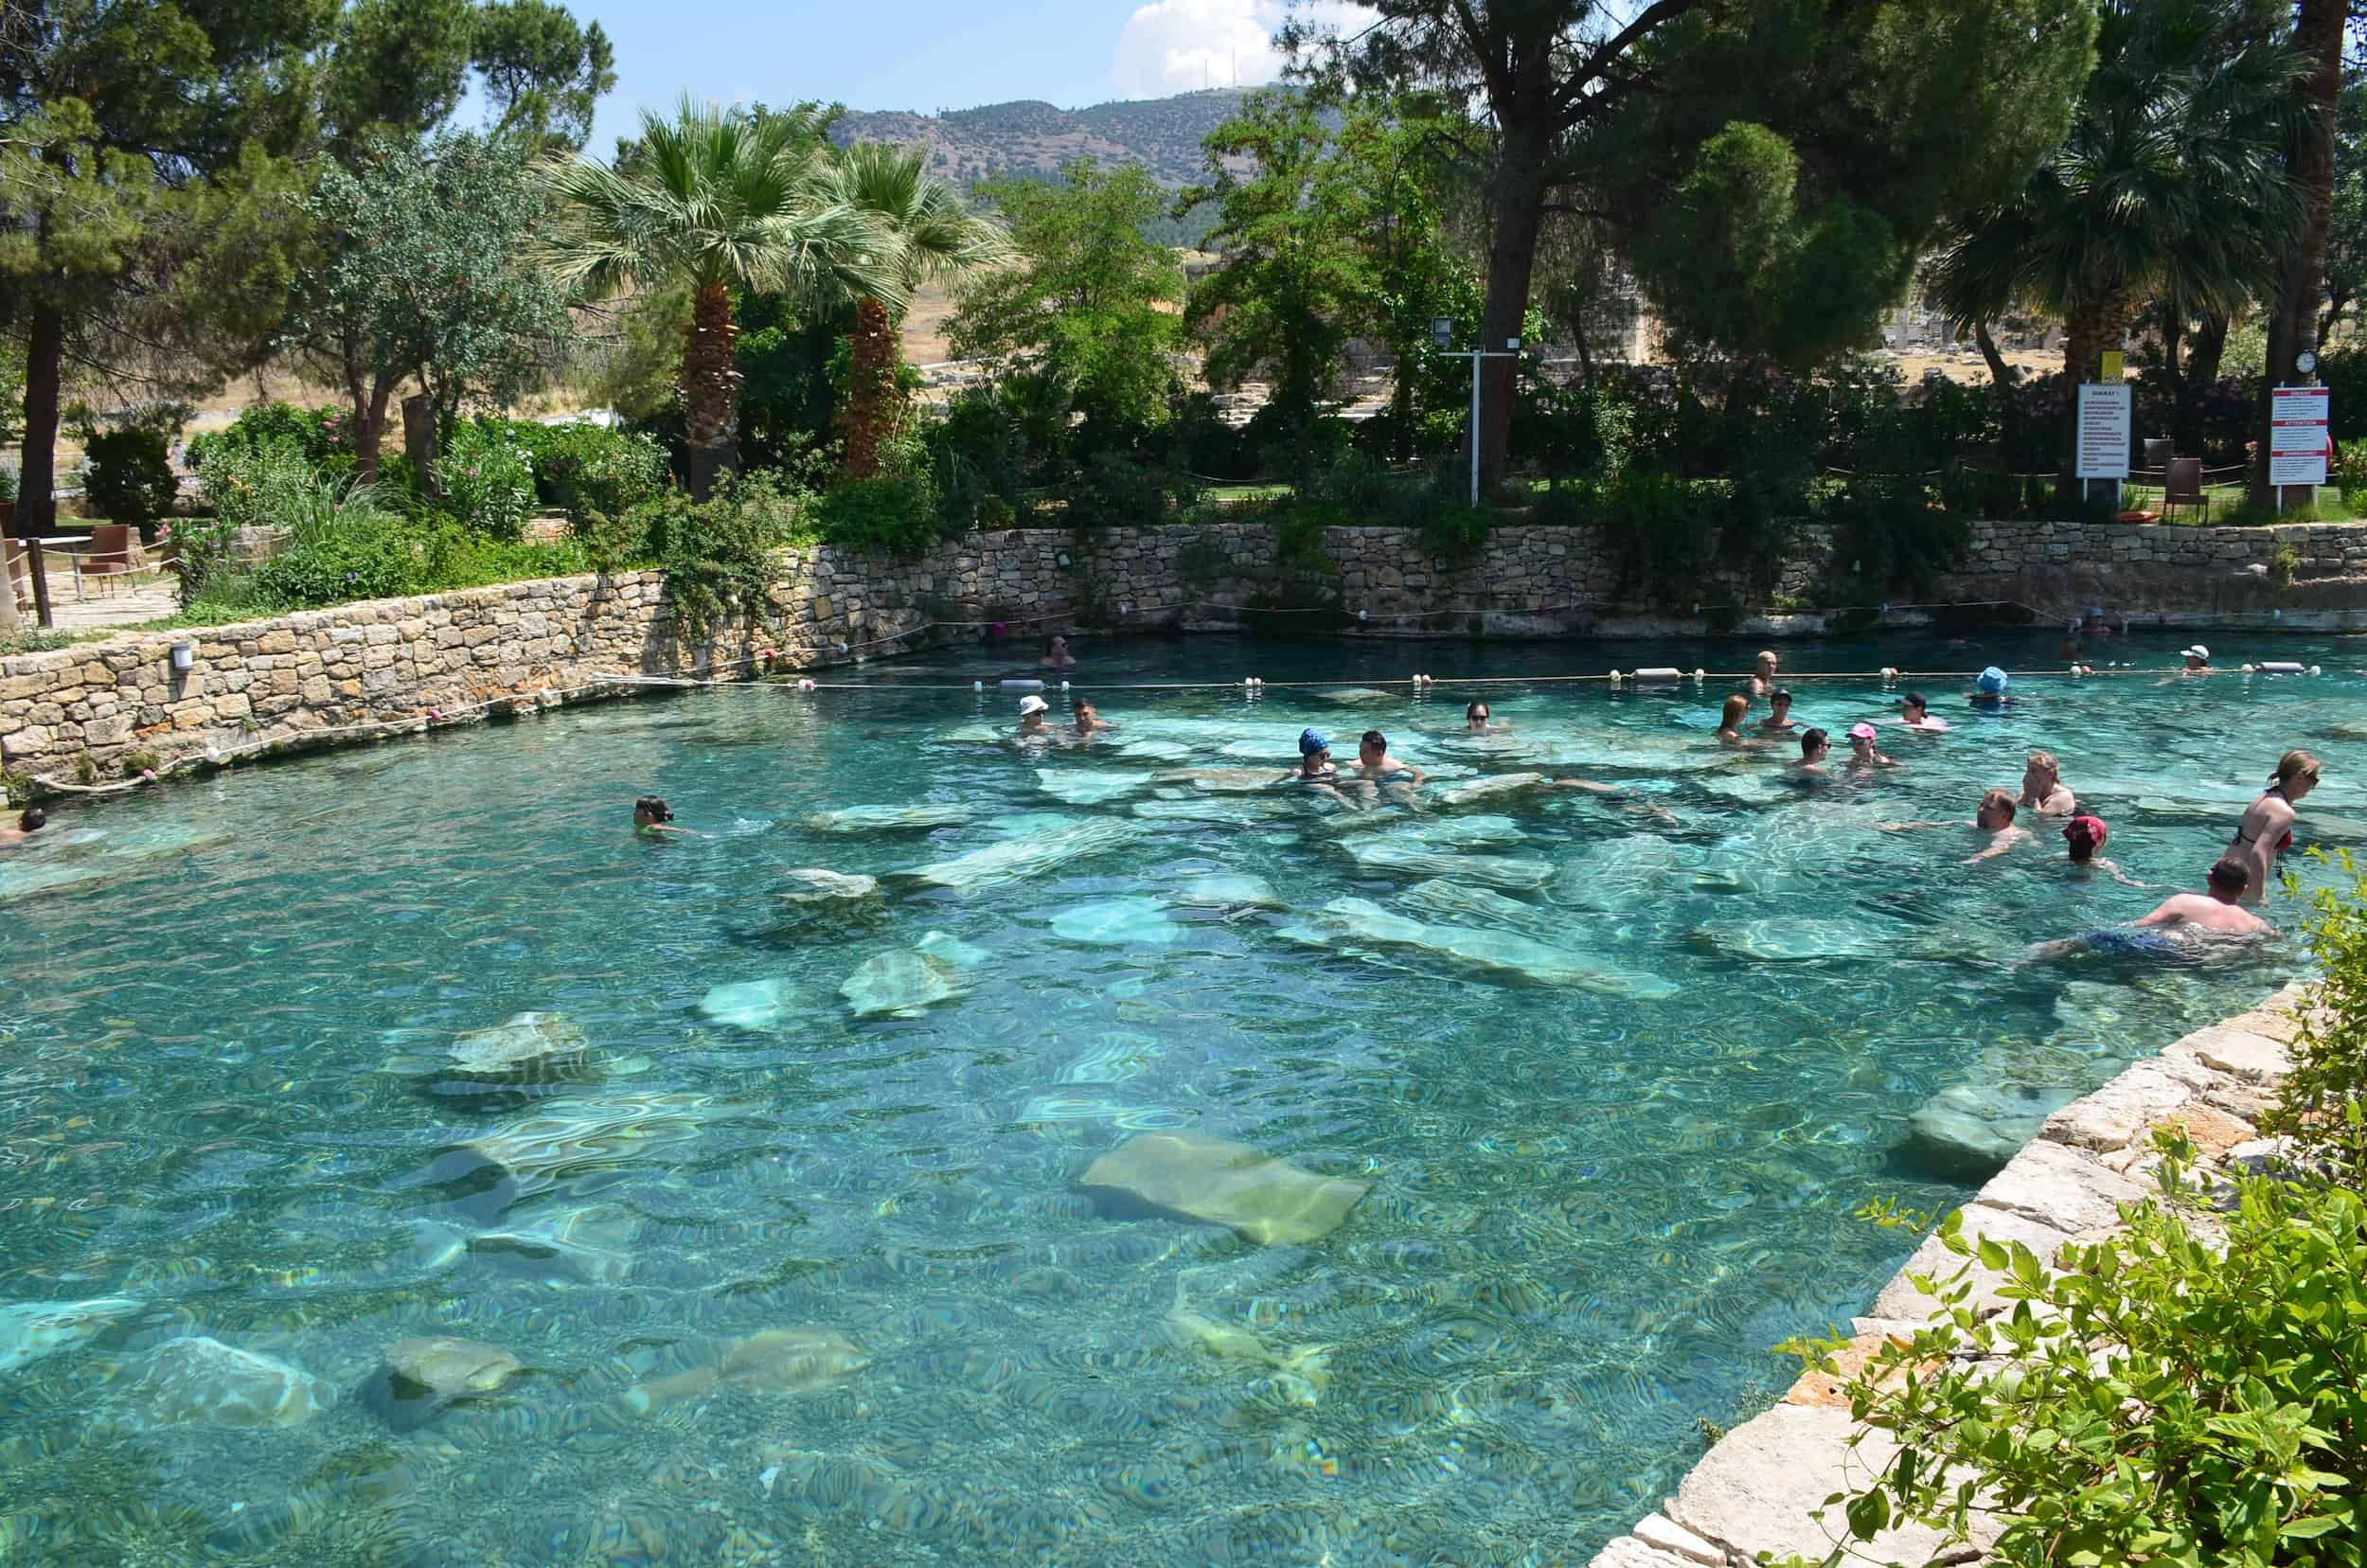 Antique Pool in Hierapolis